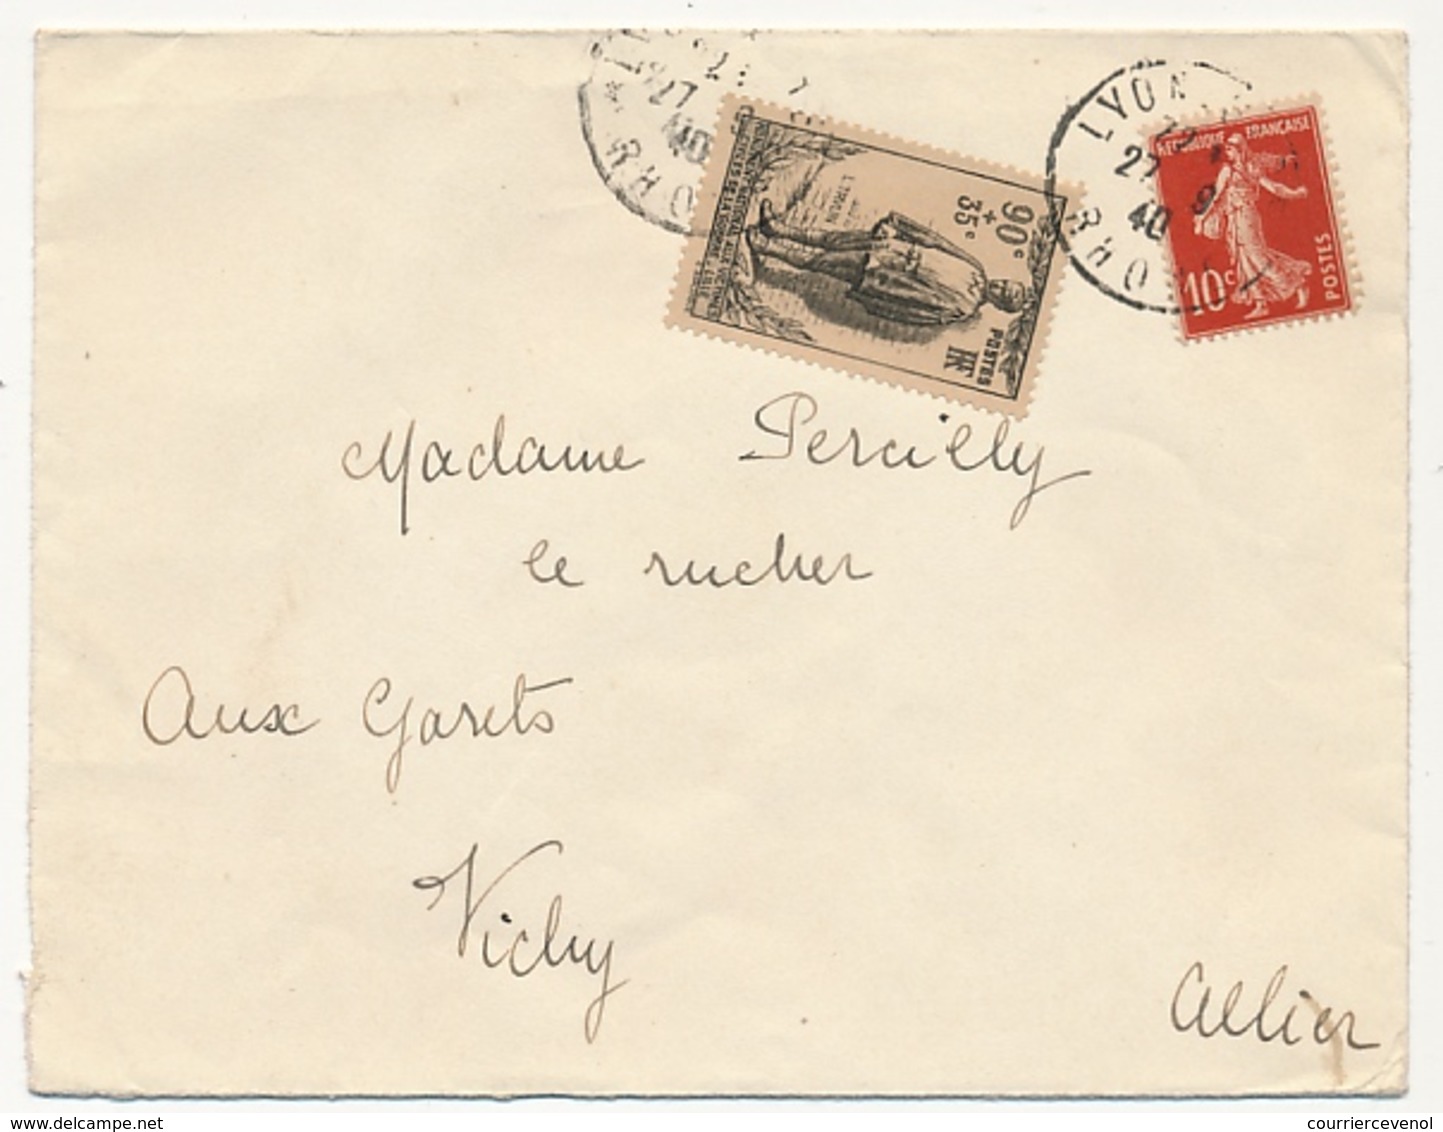 FRANCE - Enveloppe Affr 90c + 35C Monument National Victimes Civiles + 10c Semeuse - LYON 27-9-1940 - Briefe U. Dokumente